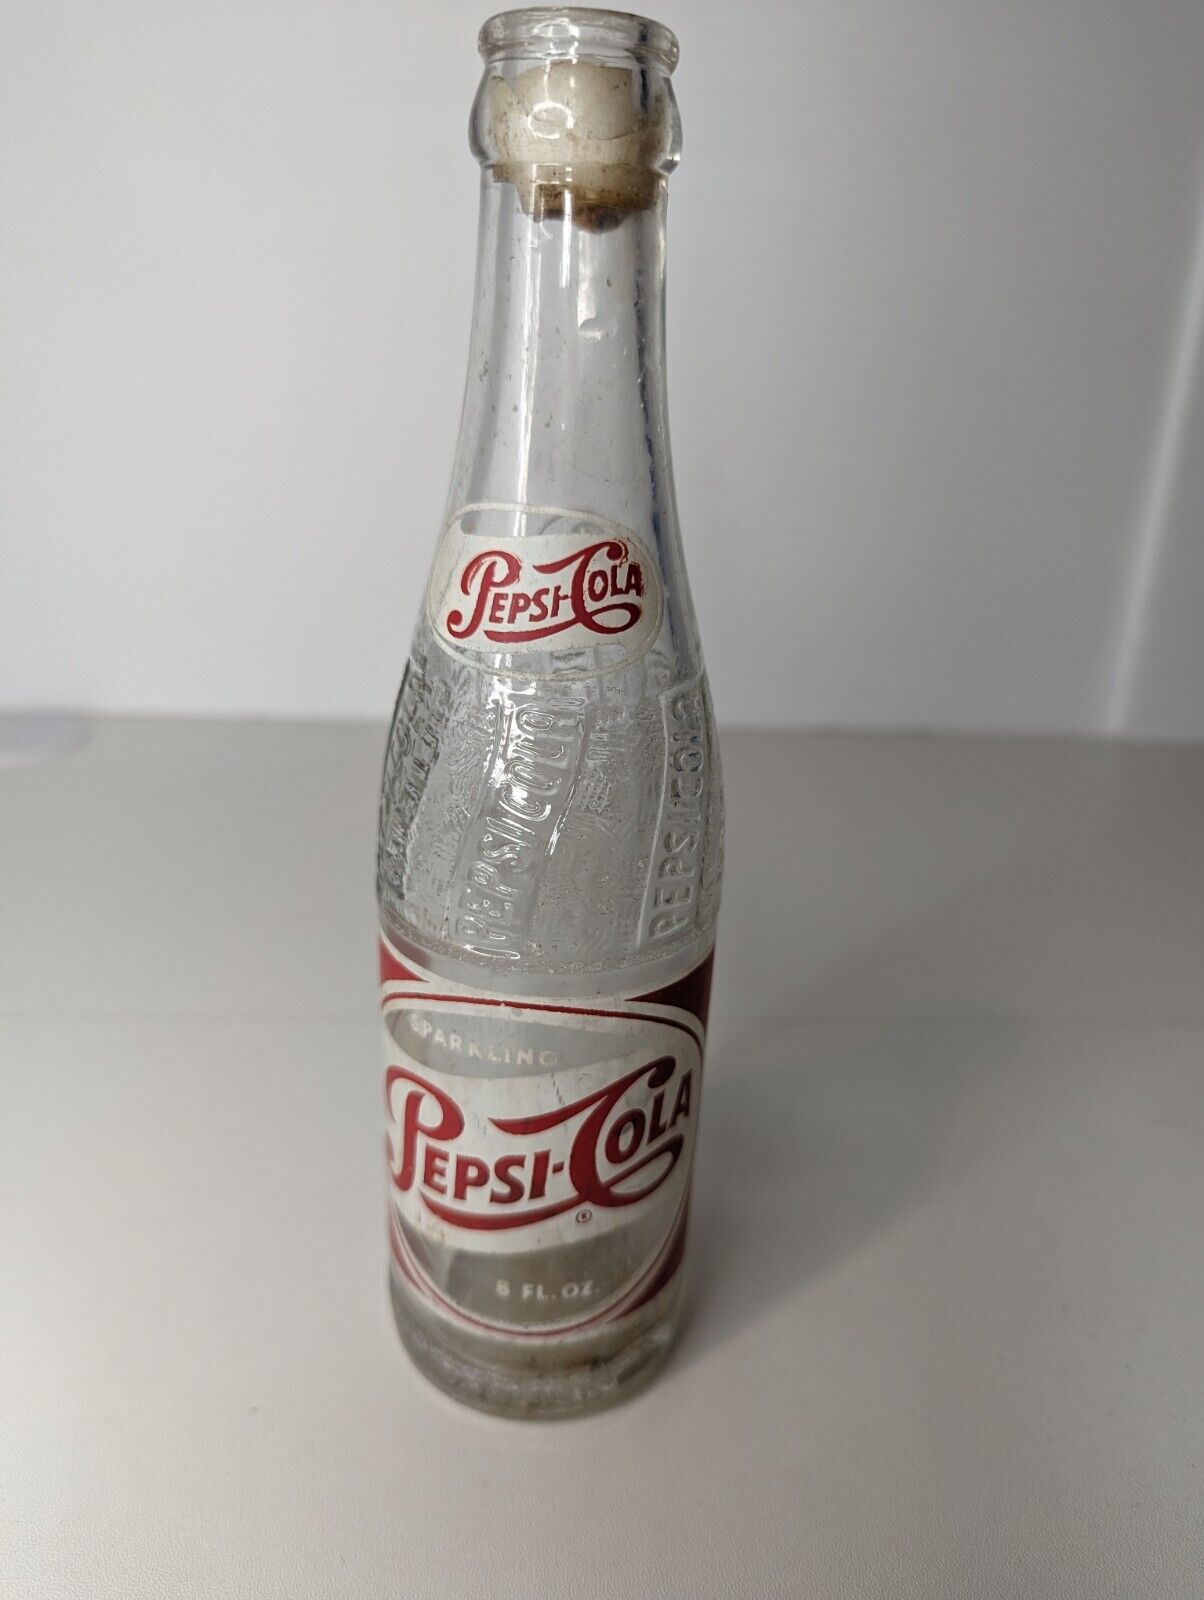 Vintage 1950's Sparkling Pepsi-Cola Bottle